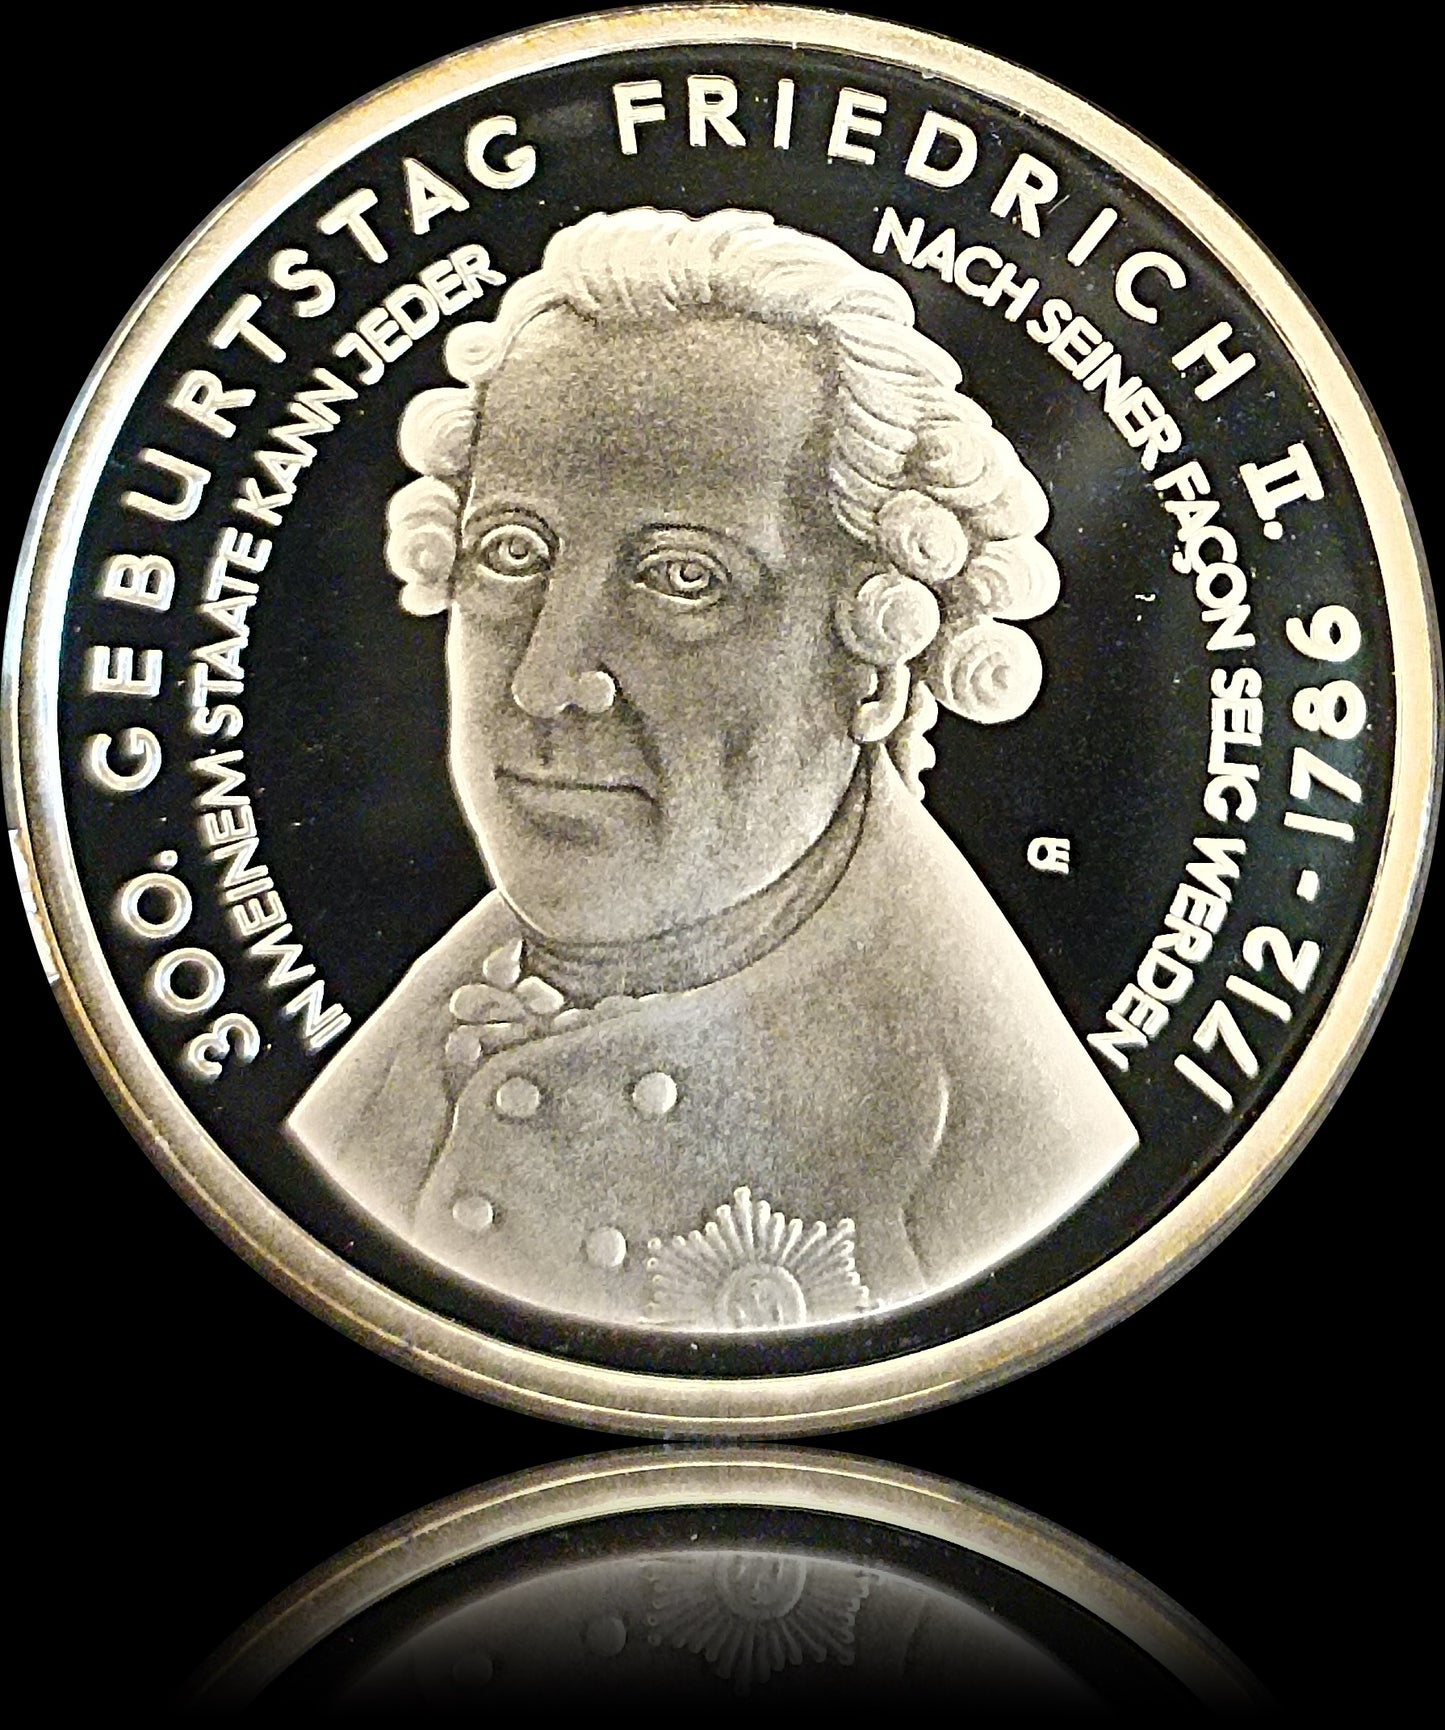 300. GEBUTRSTAG FRIEDRICH II, Serie 10 € Silber Gedenkmünzen Deutschland, Spiegelglanz, 2011